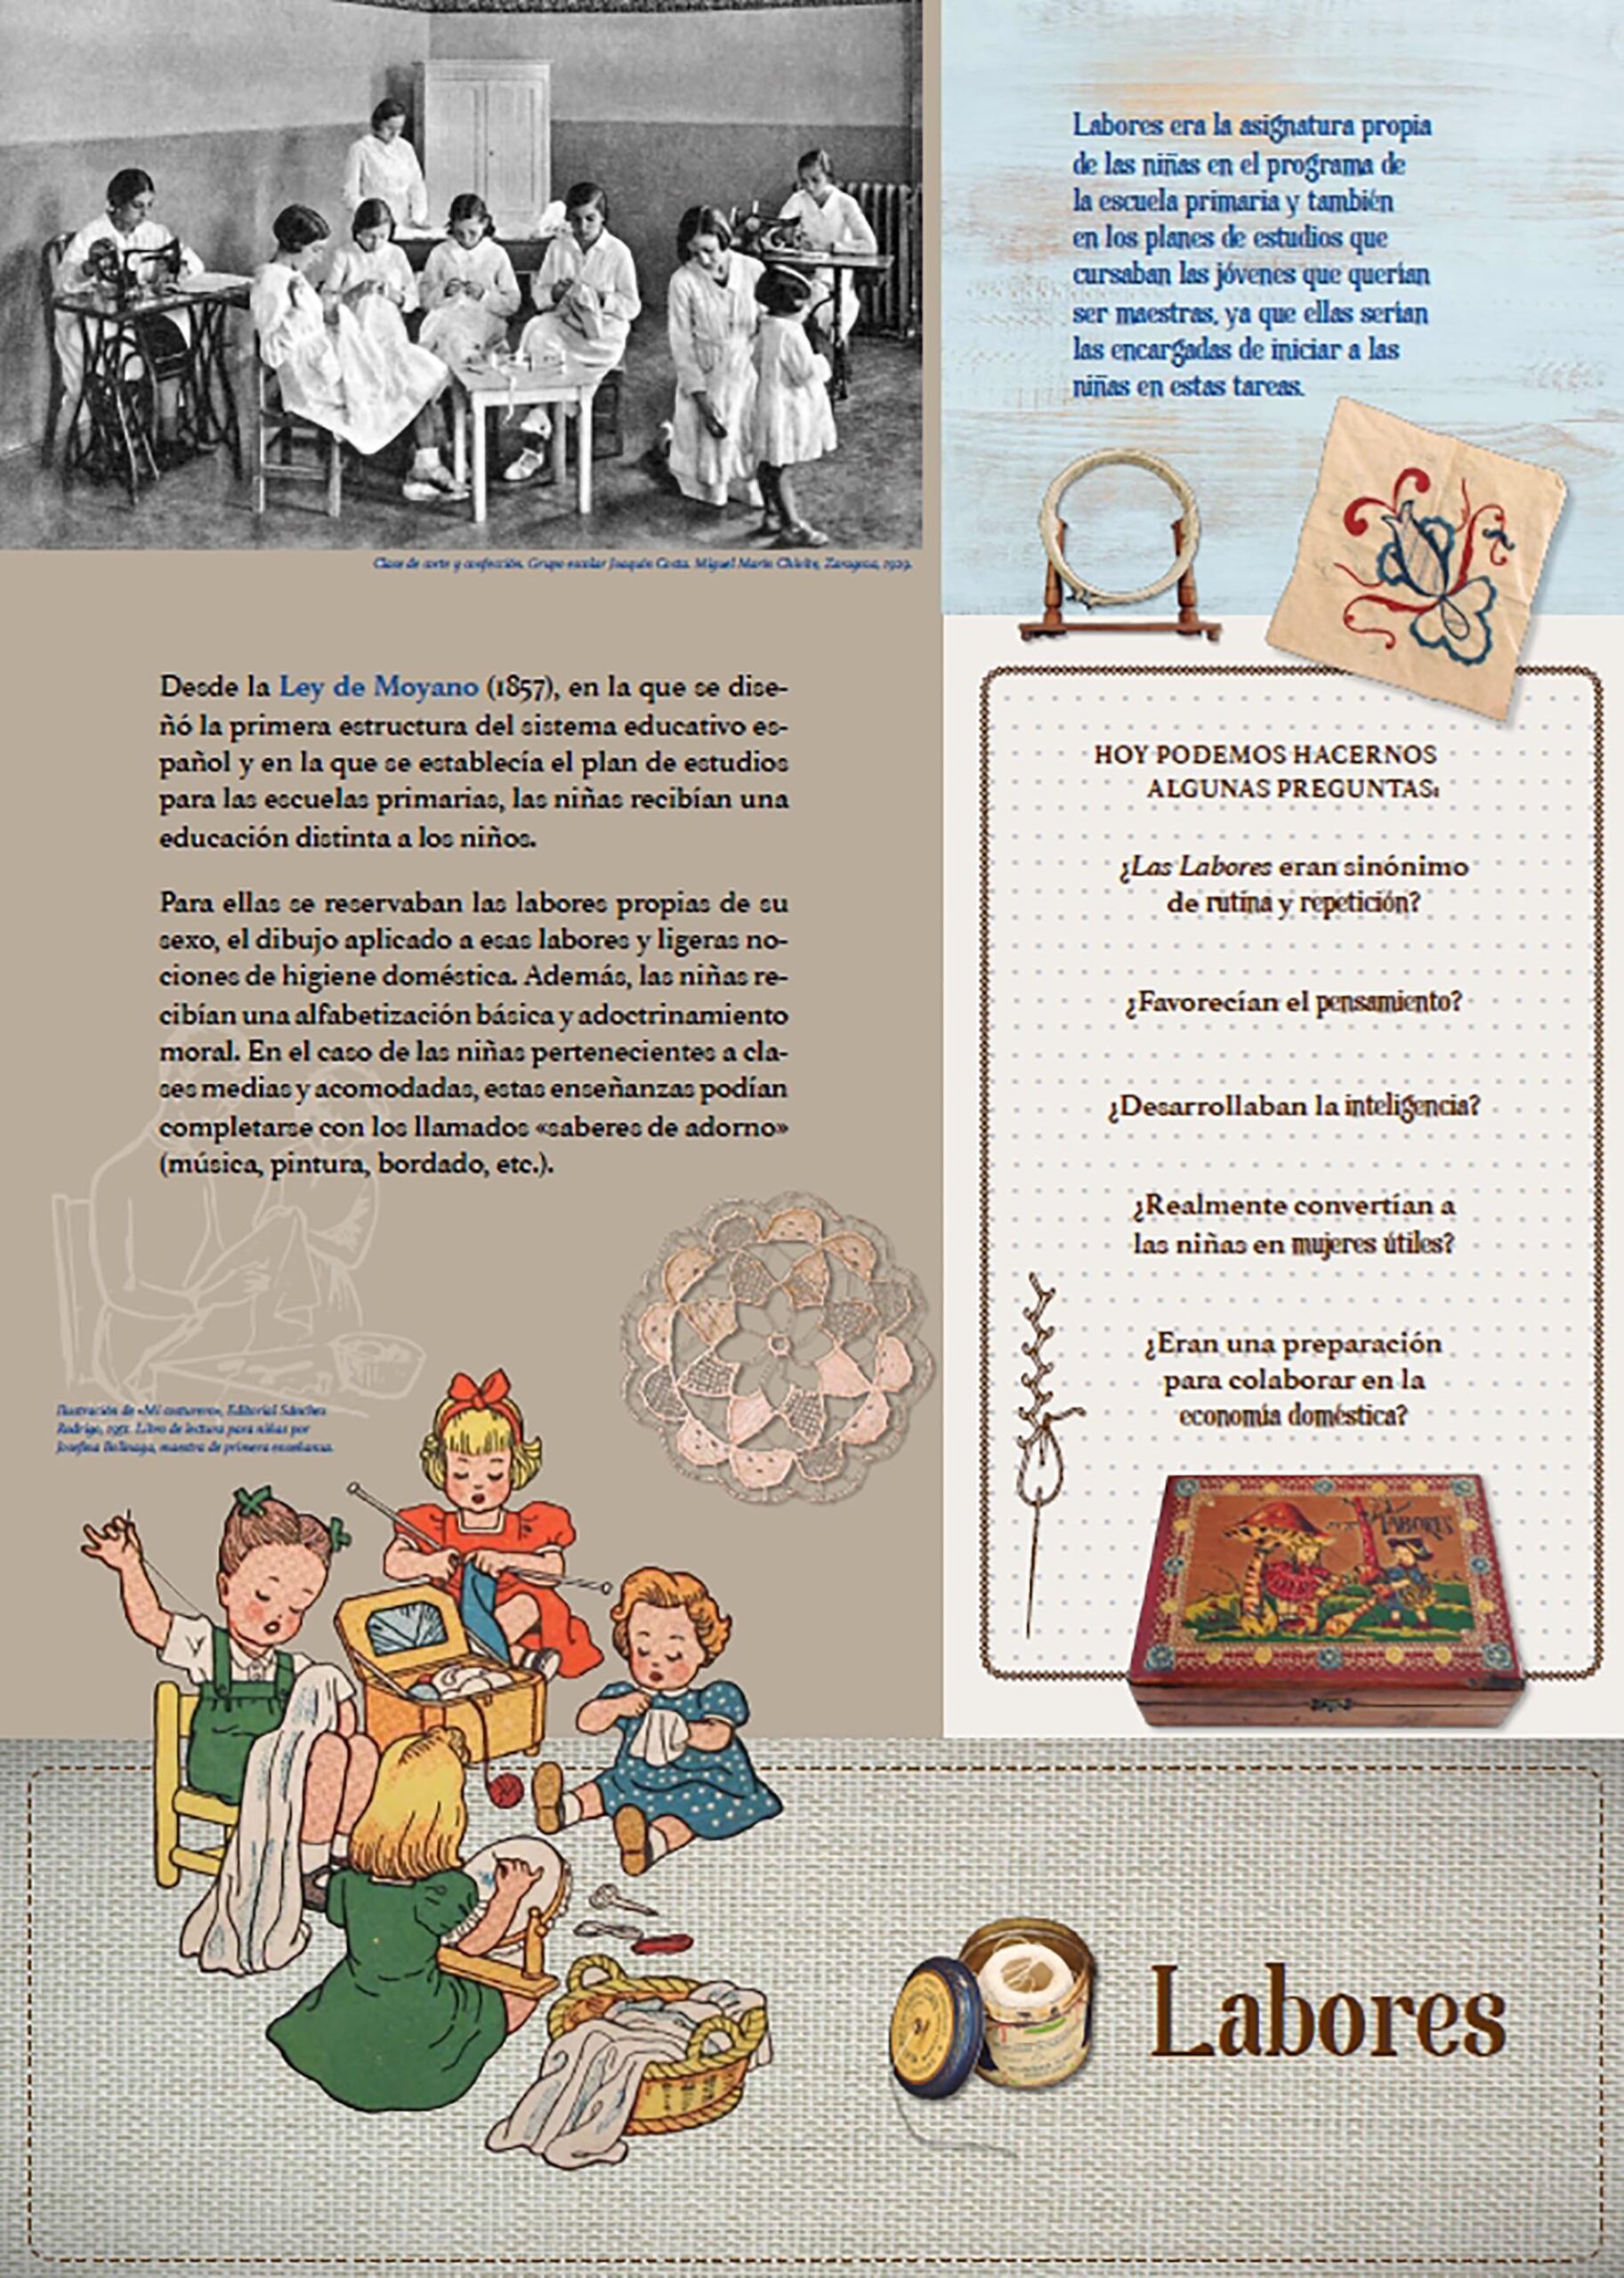 La educación de las niñas, Labores. Foto: Archivo fotográfico del Museo Pedagógico de Aragón